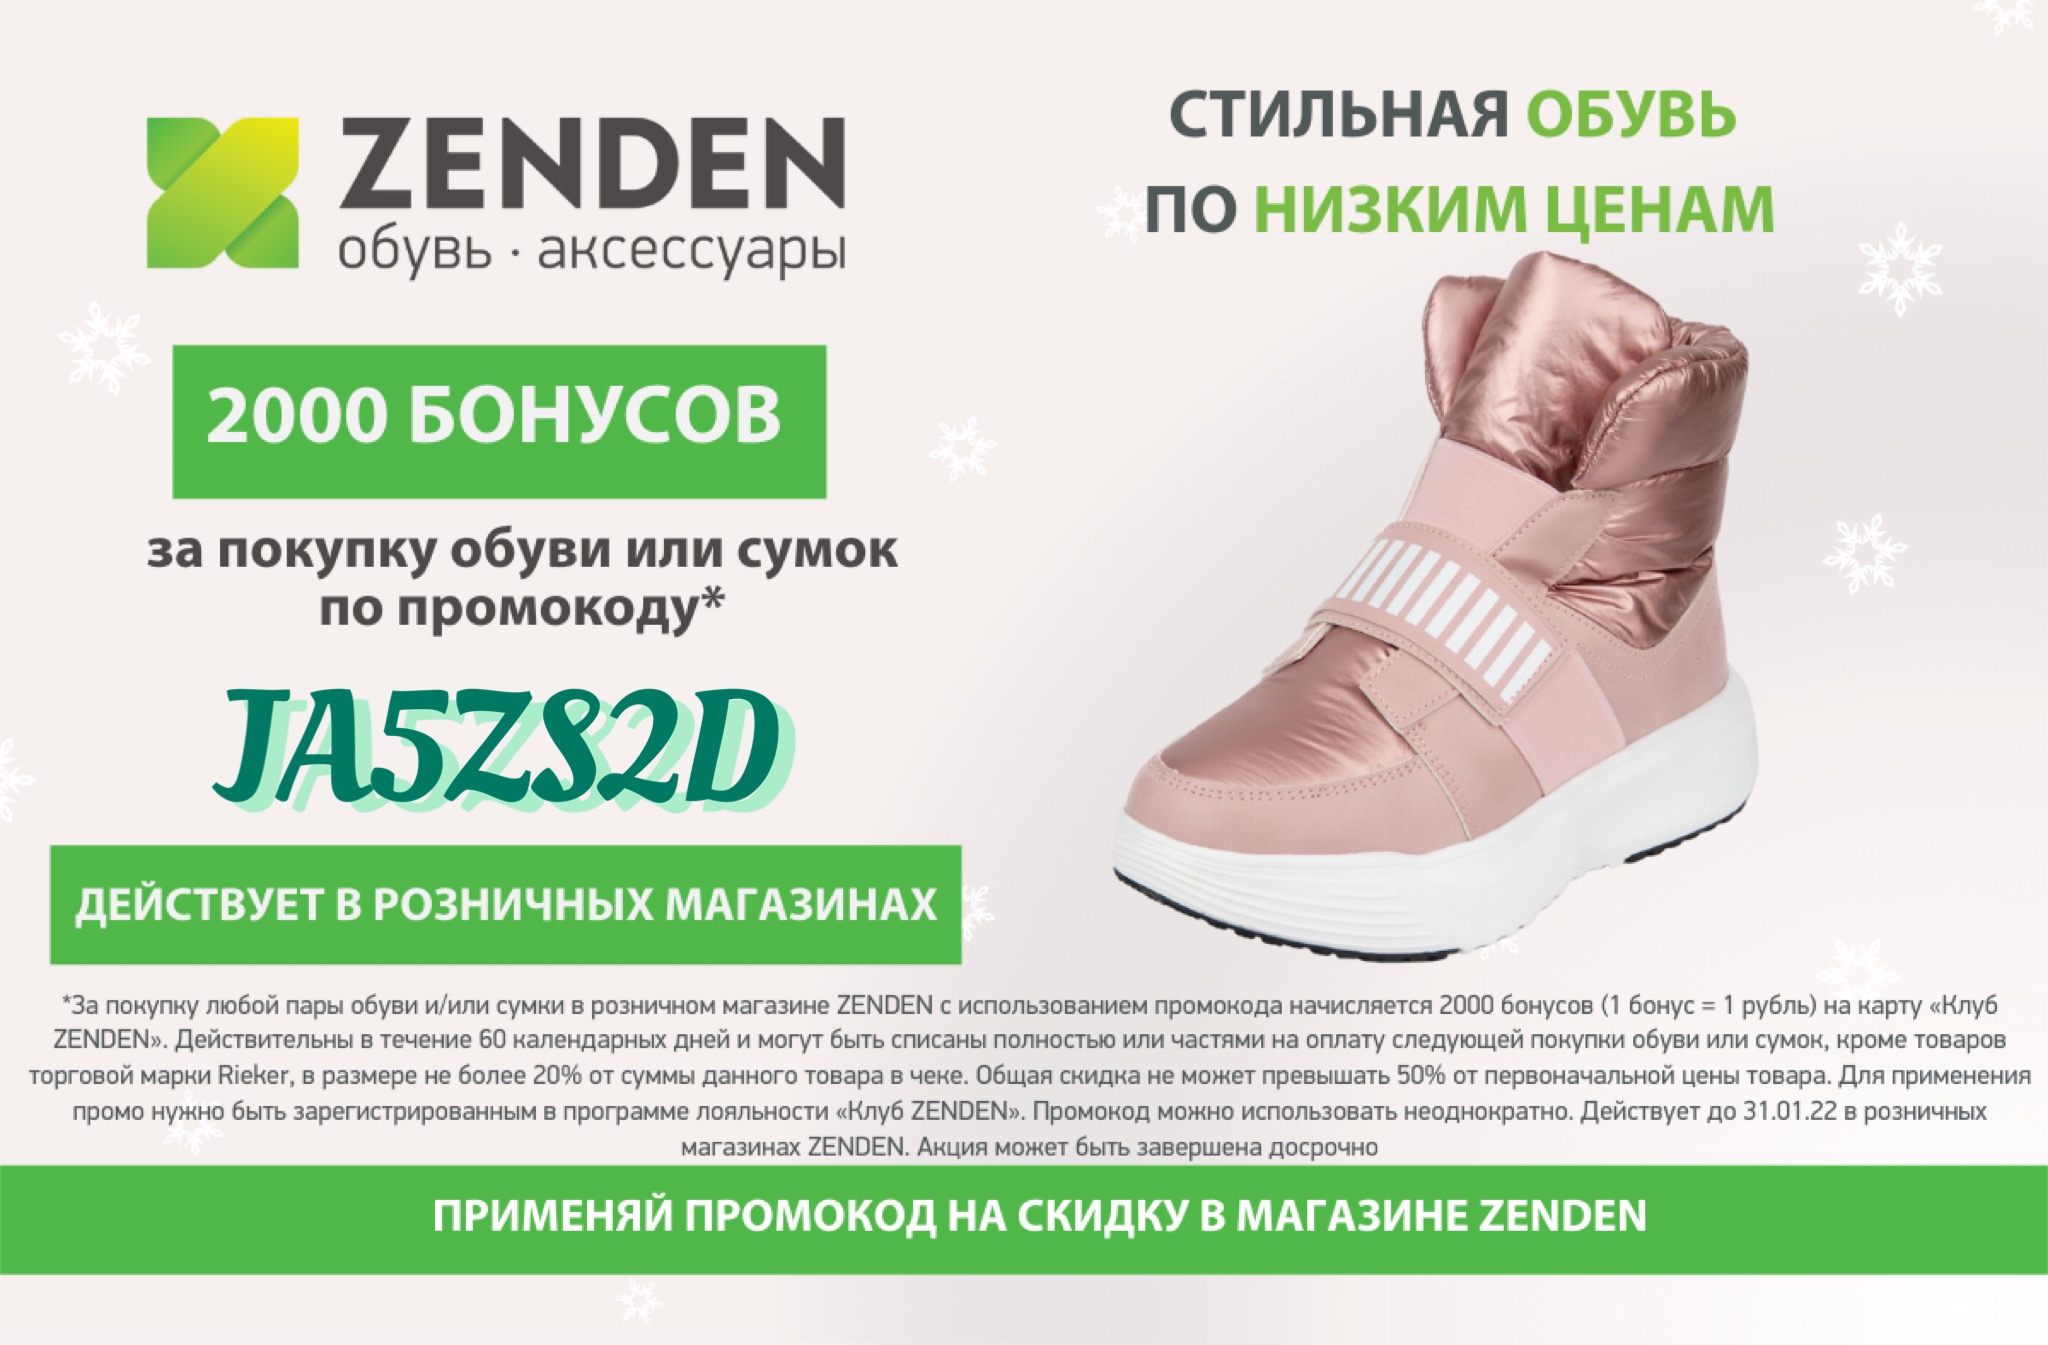 зенден ульяновск каталог обуви с ценами самолет